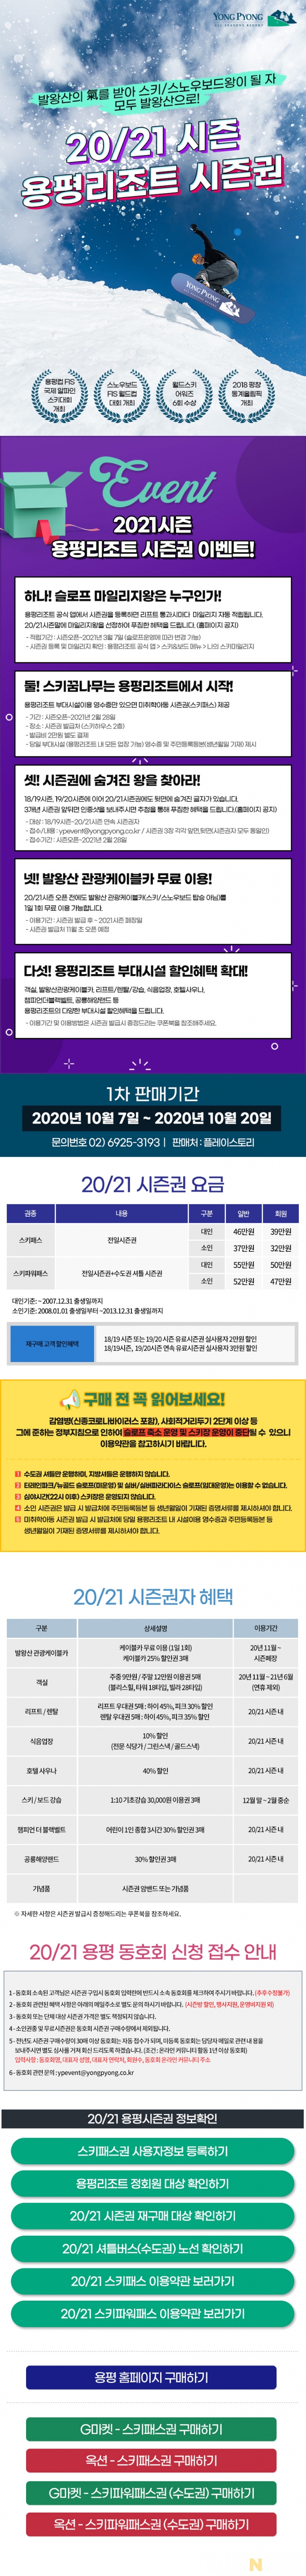 용평리조트, 7~20일 20/21 스키 시즌권 1차 판매 개시